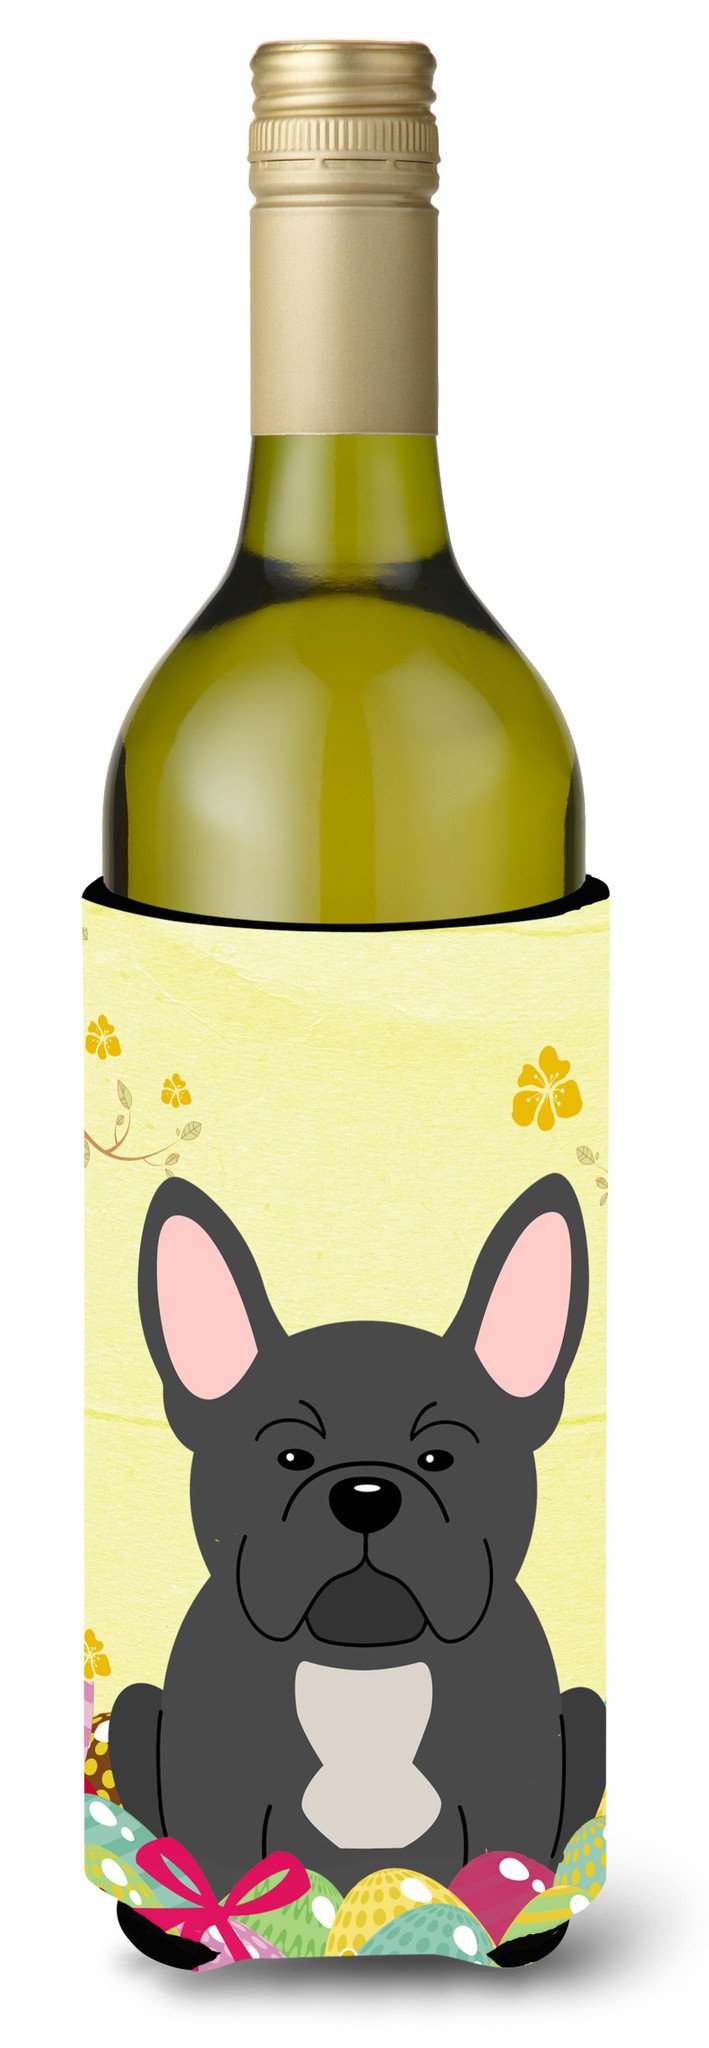 Easter Eggs French Bulldog Black Wine Bottle Beverge Insulator Hugger BB6014LITERK by Caroline's Treasures